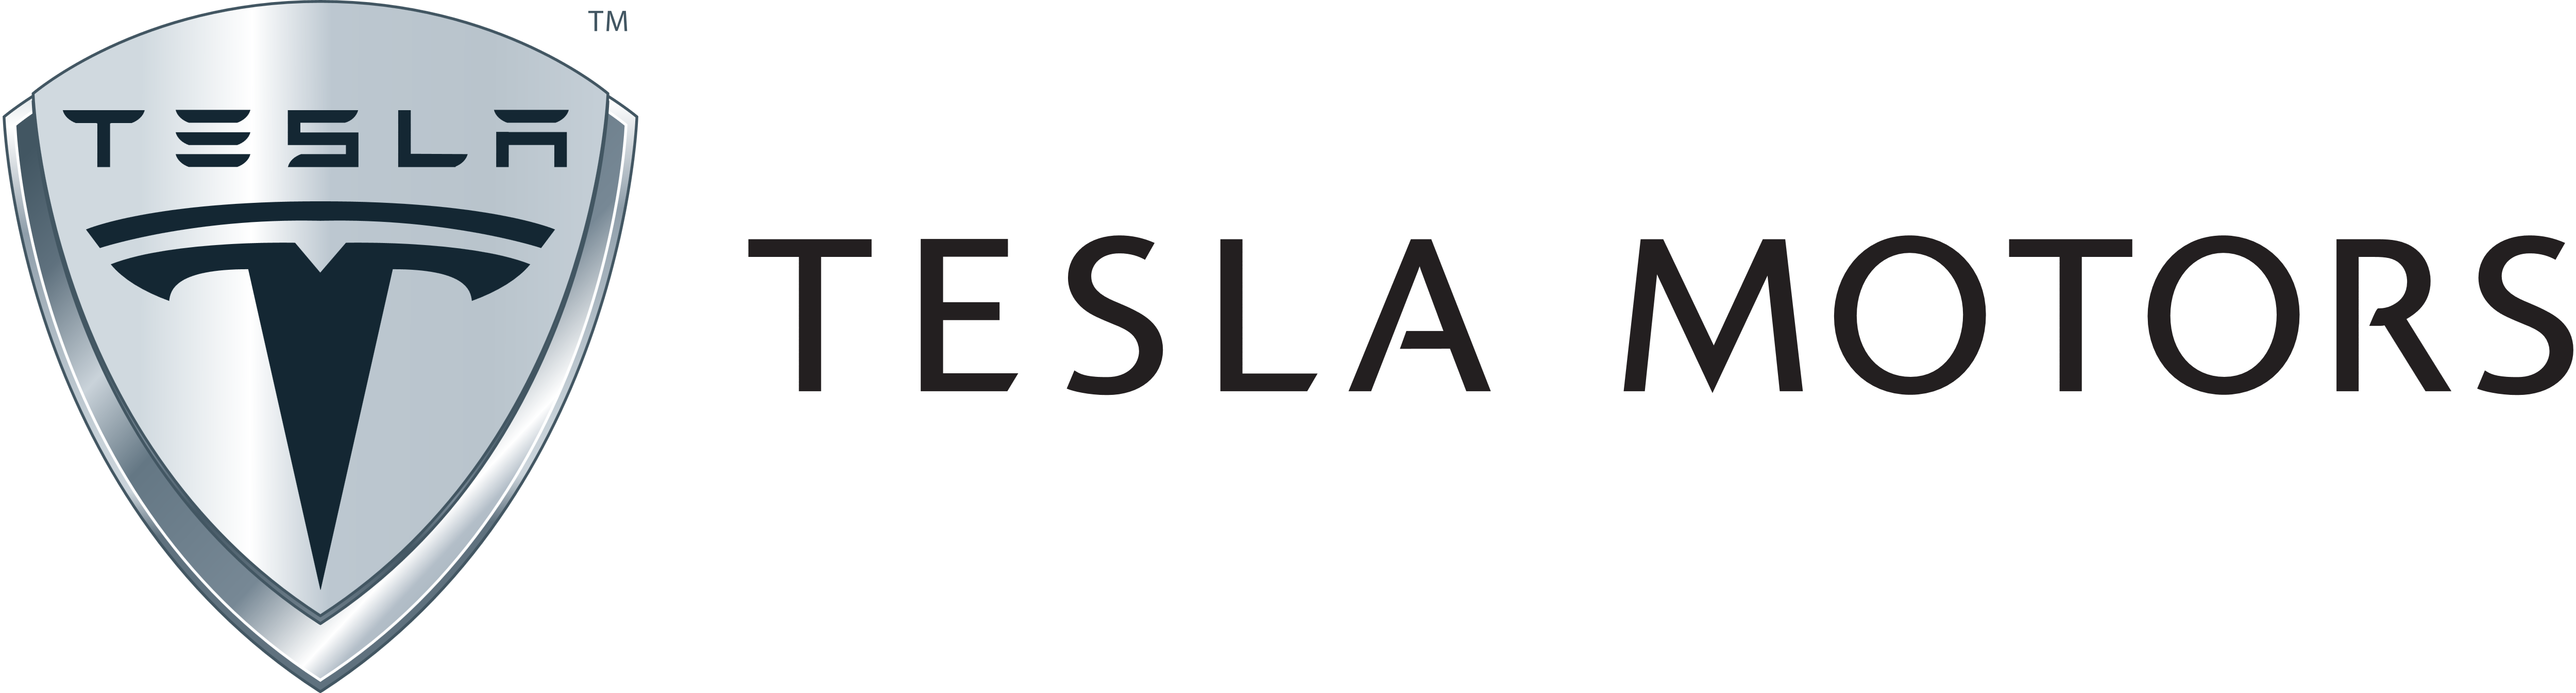 Download PNG image - Tesla Logo Transparent PNG 